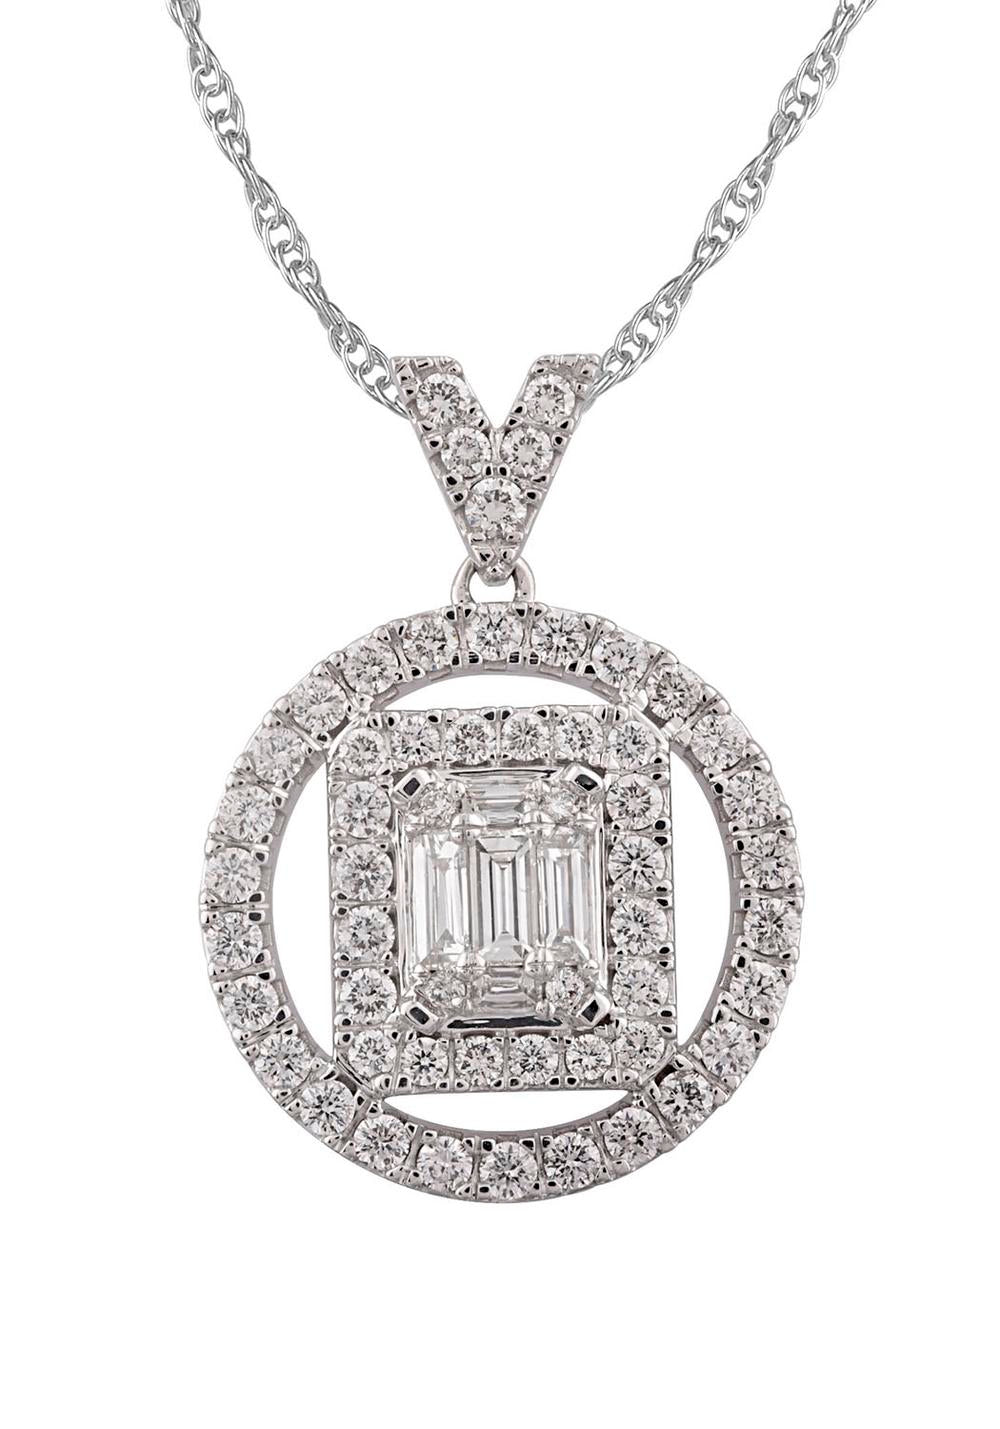 14kw diamond pendant